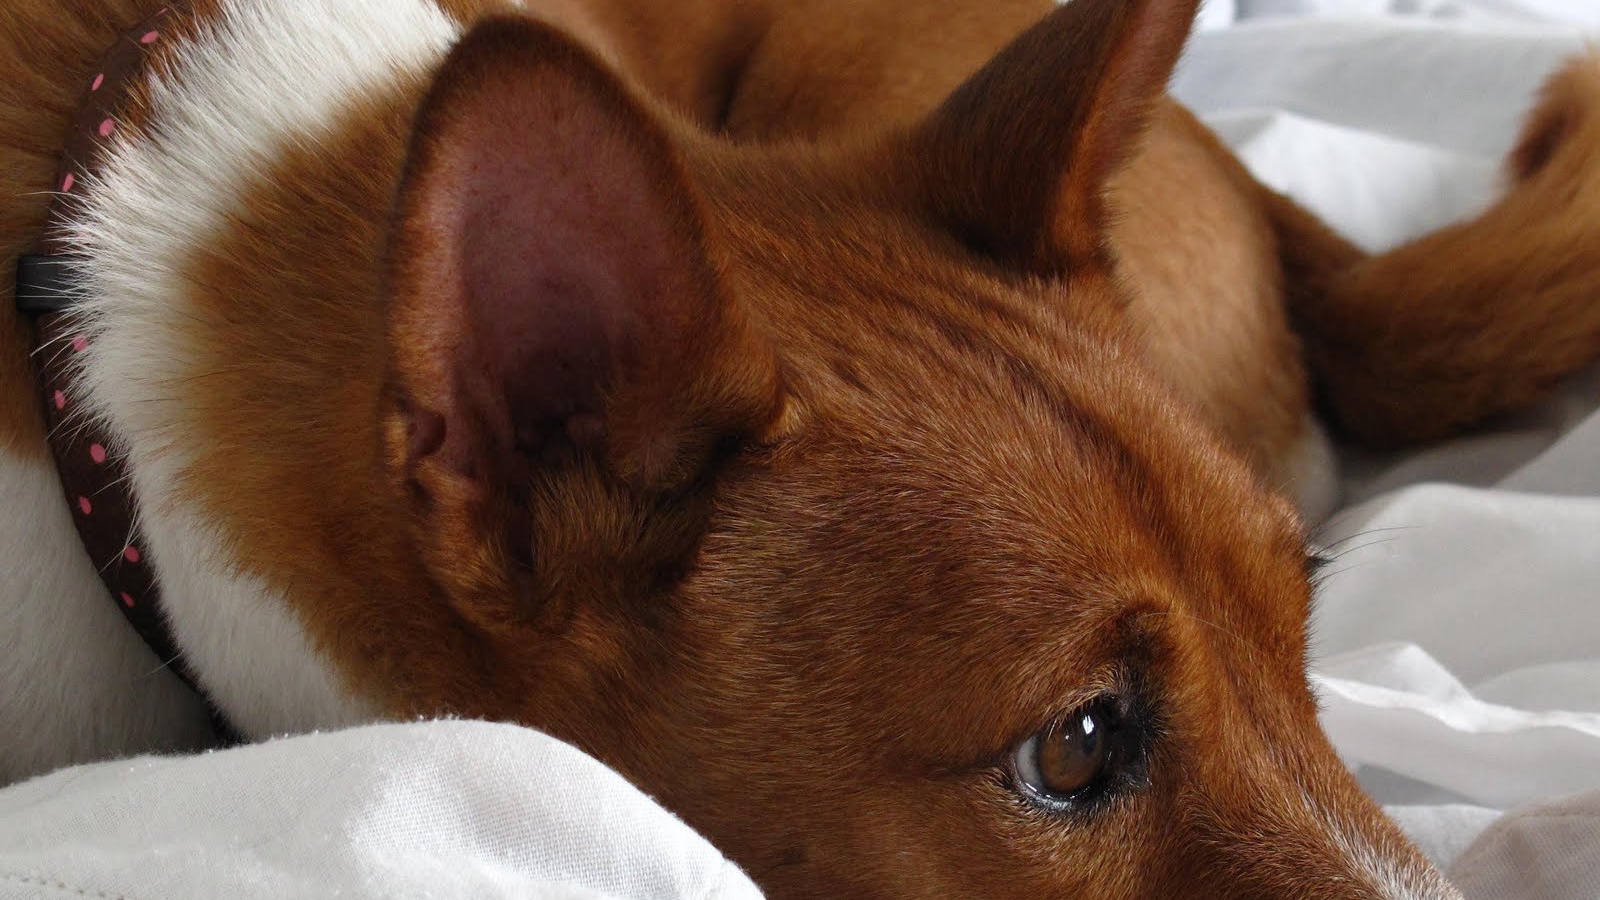 Собака породы басенджи отдыхает на кровати